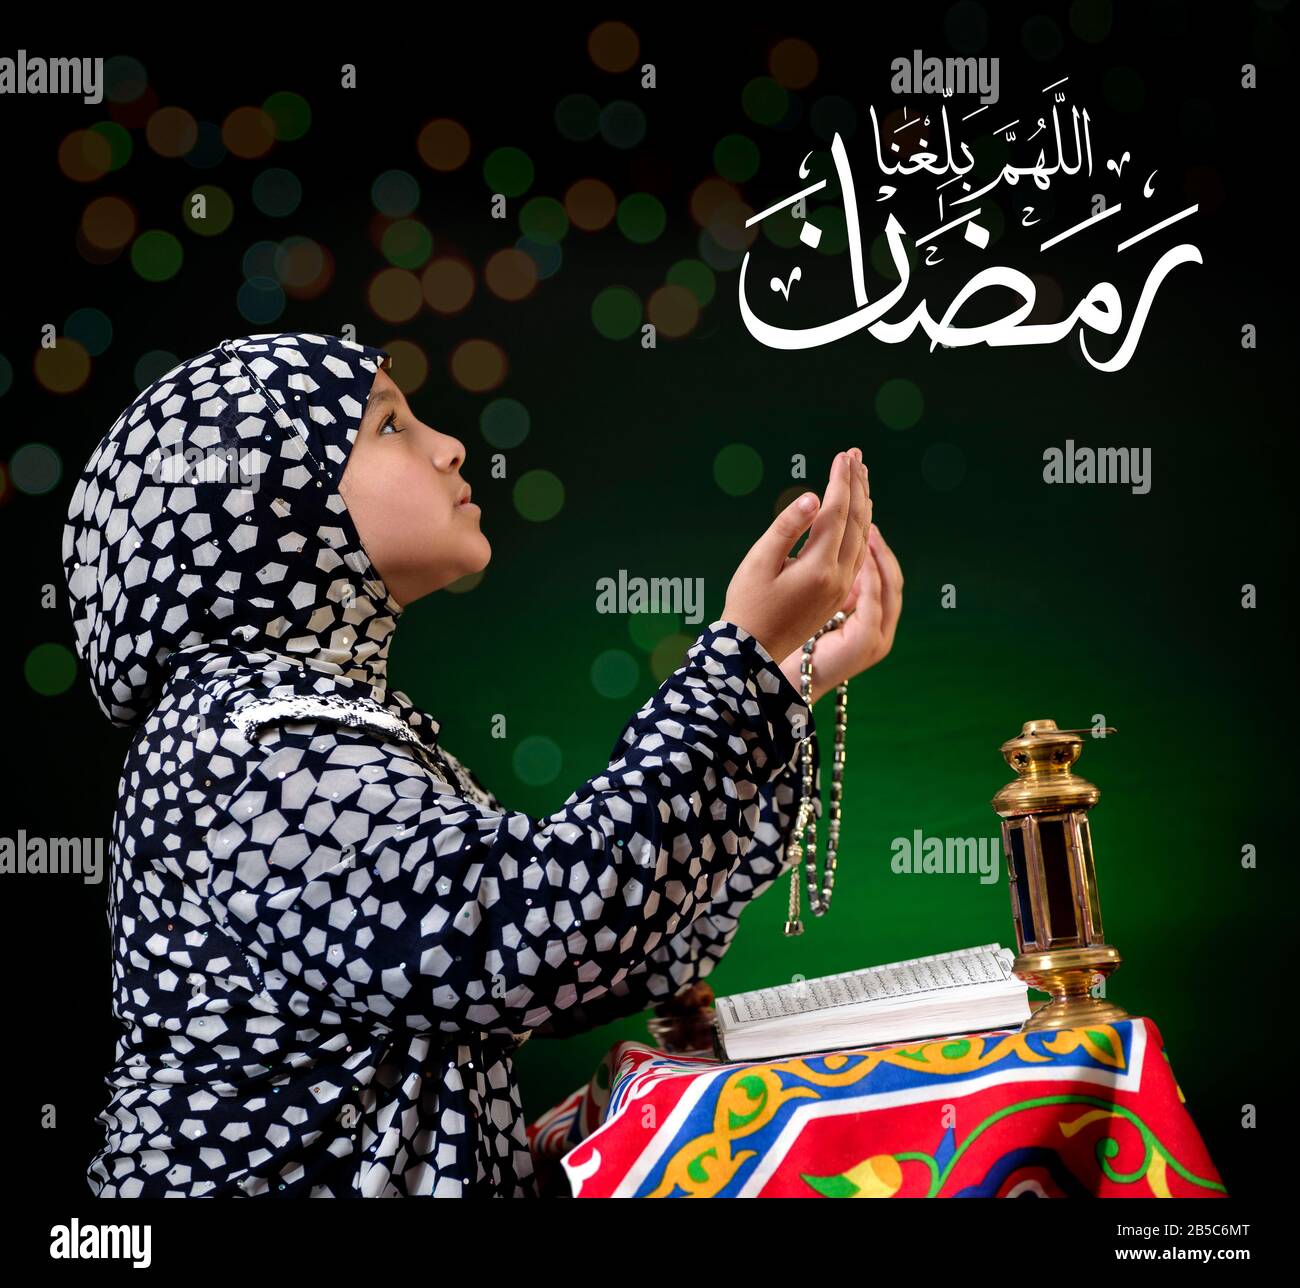 Mani su giovane ragazza musulmana Che Prega per Dio, con il testo arabo di Calligraphy Che Dice 'Dio, aiutaci a raggiungere Ramadan' Foto Stock